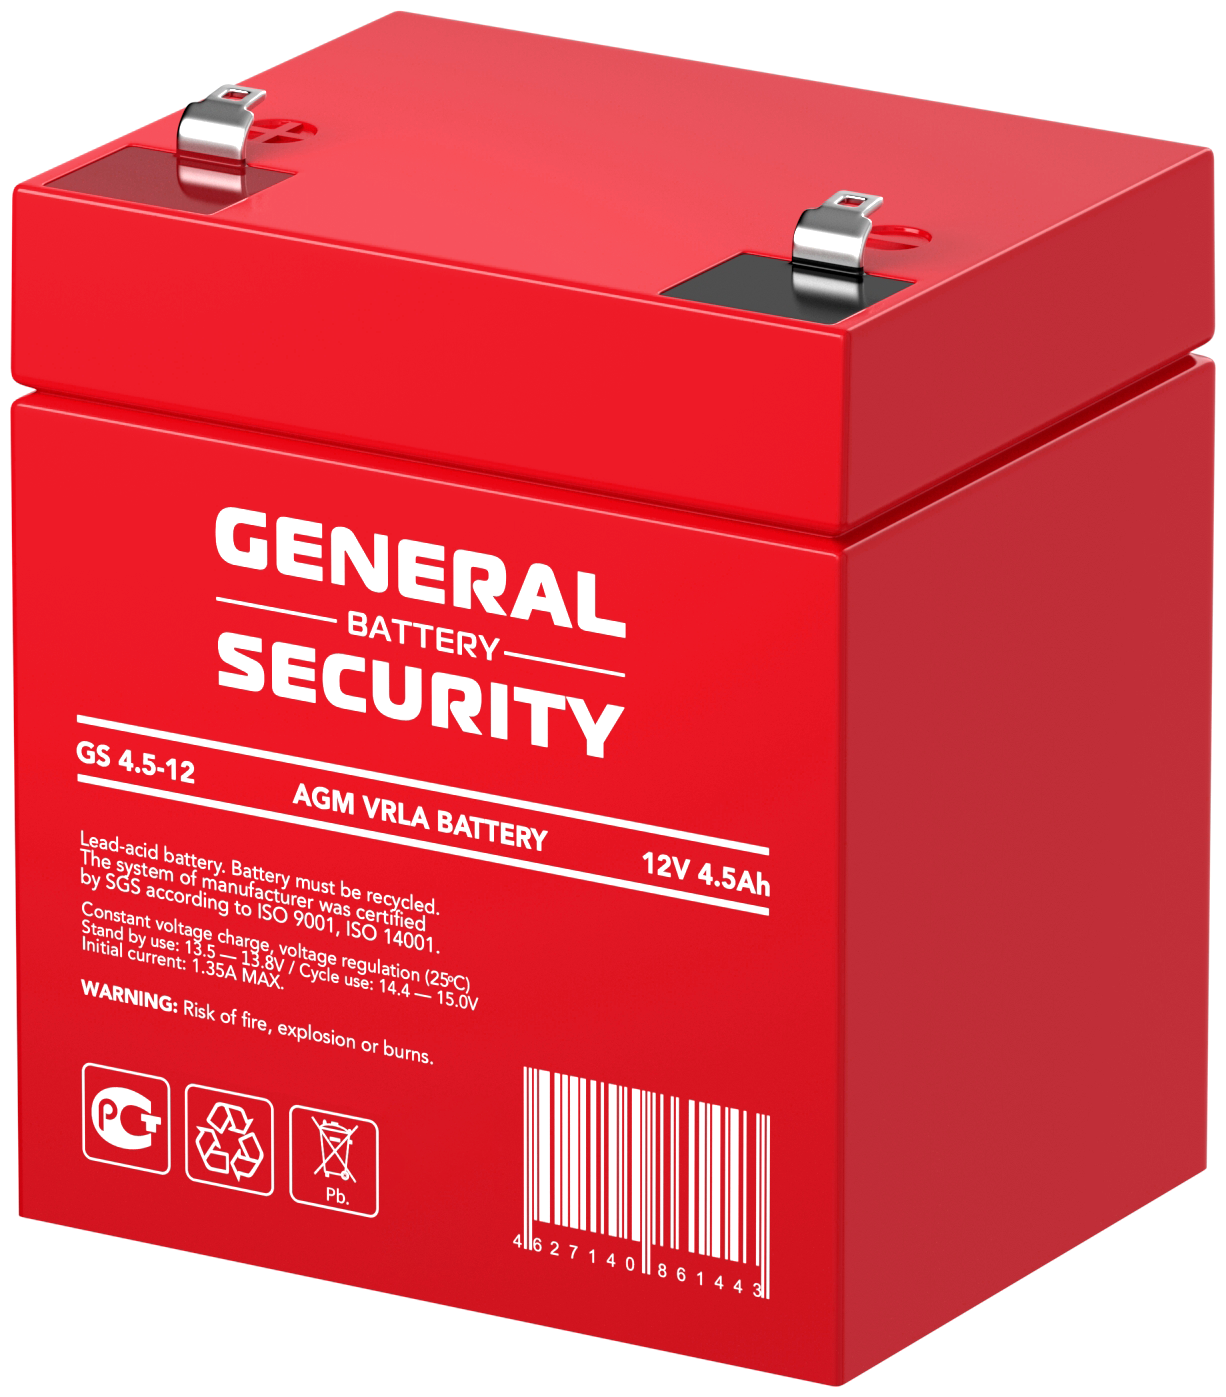 Свинцово-кислотный аккумулятор General Security GS 4.5-12 (12 В 4.5 Ач)